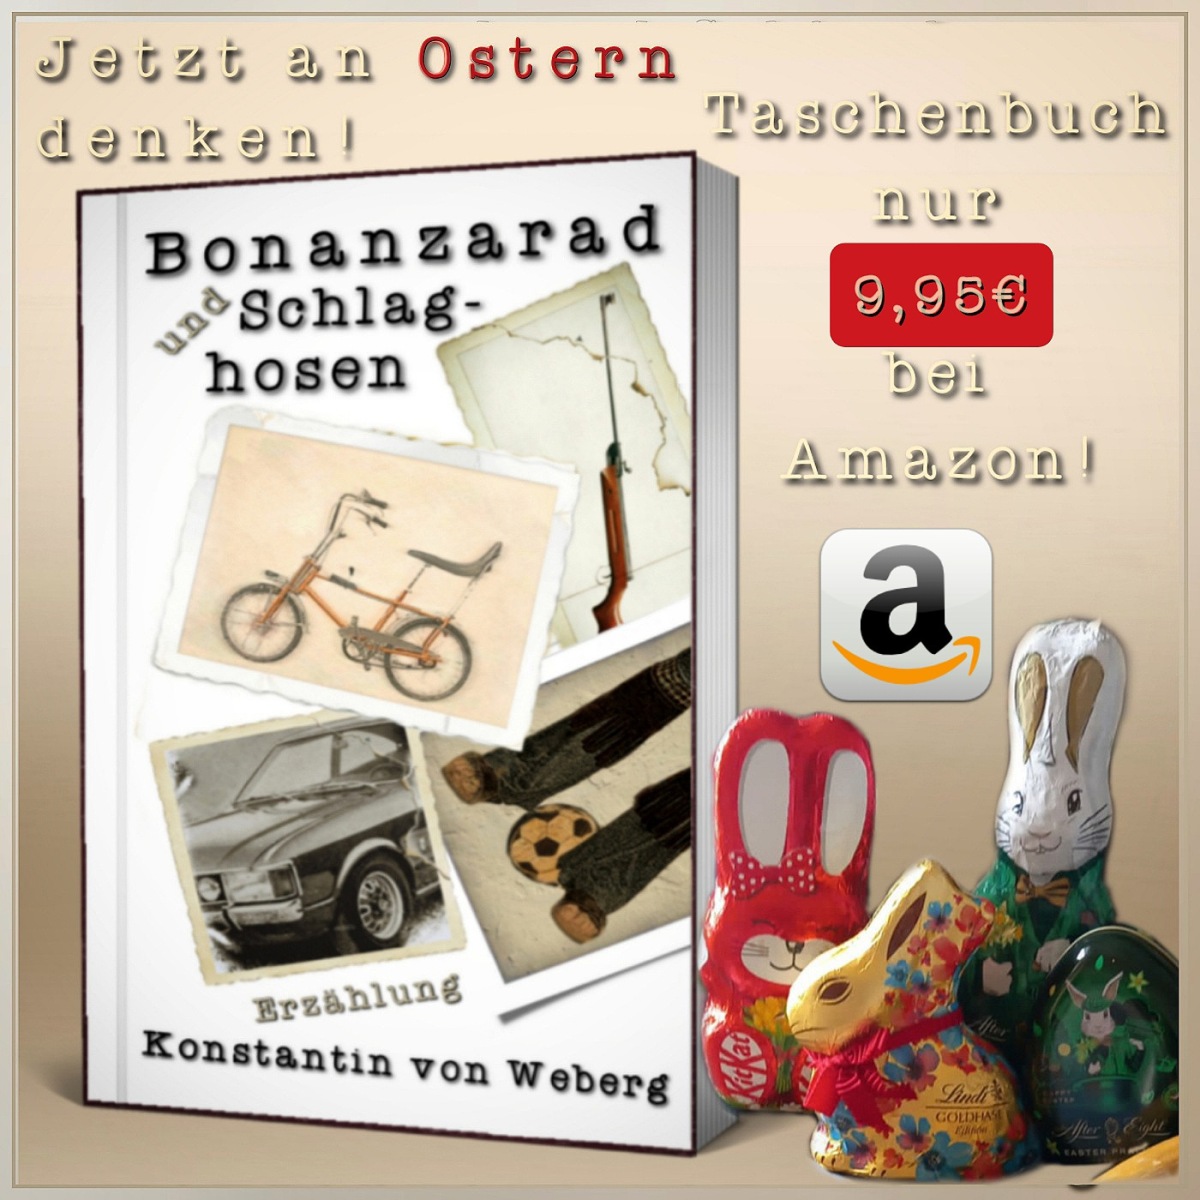 Bonanzarad und Schlaghosen • Taschenbuch nur 9,95€ als brillantes Ostergeschenk 🐇🛍️🎁📖❤️ Jetzt bei Amazon bestellen!